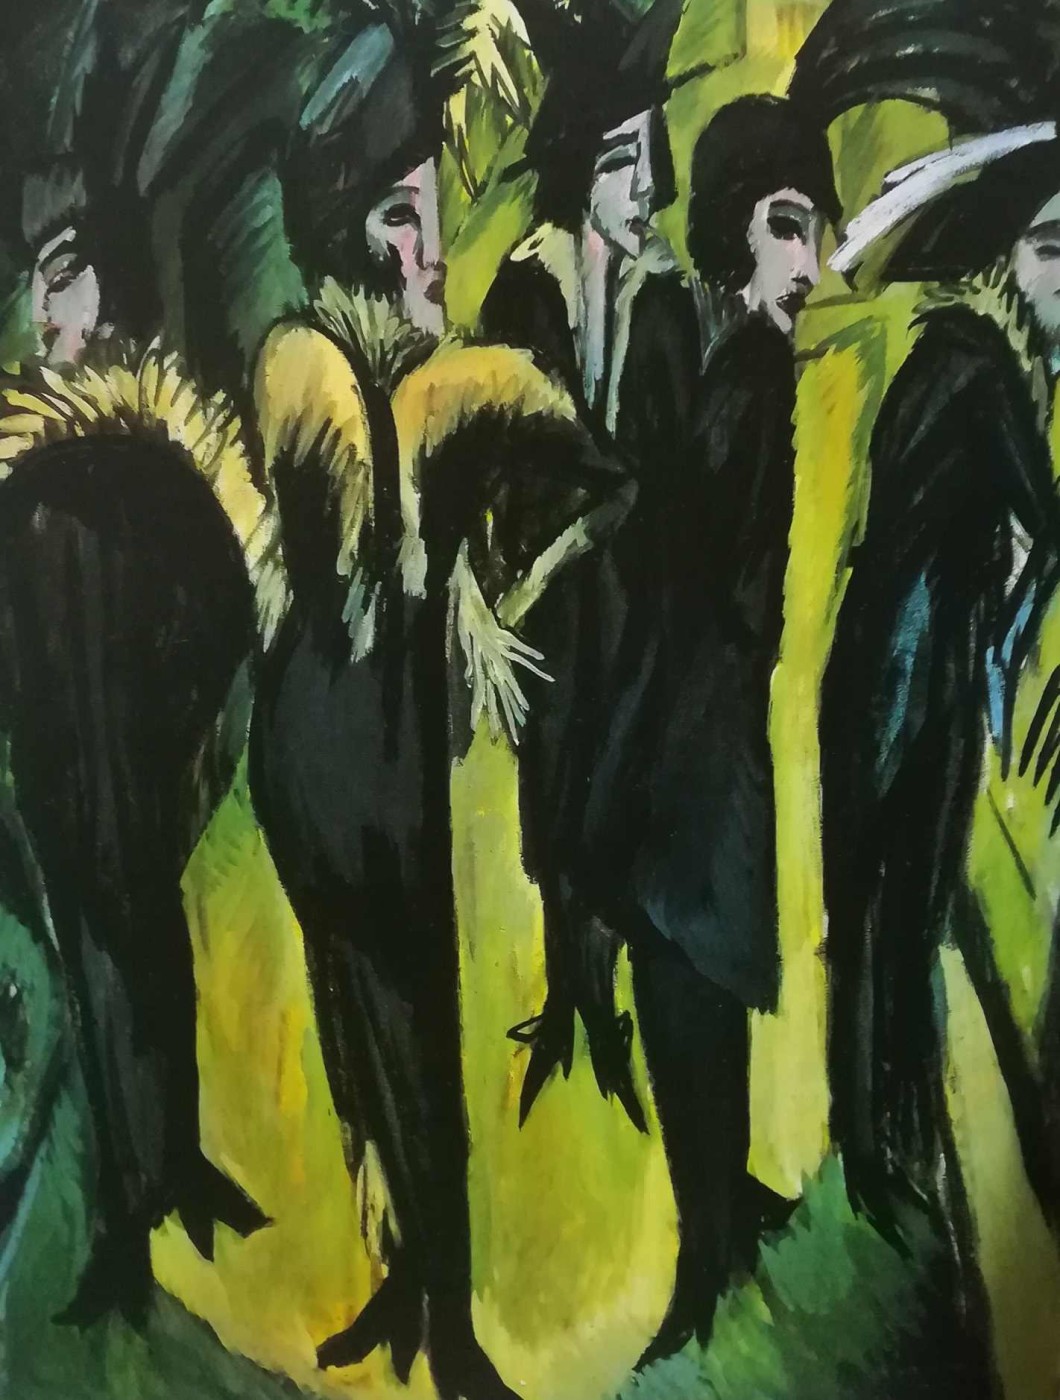 In cinque donne nella strada - Kirchner, 1913